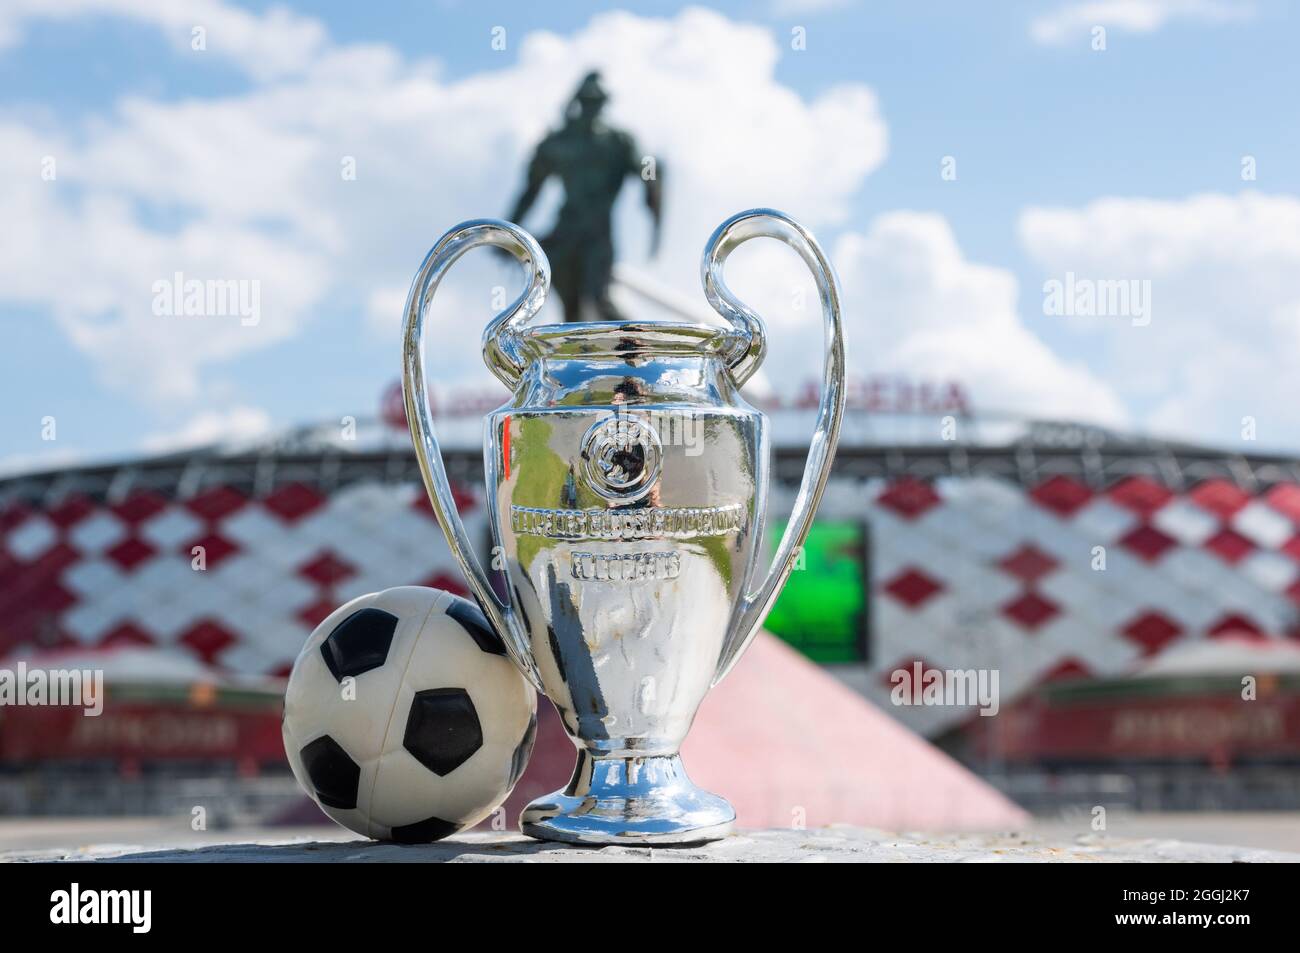 14 juin 2021 Moscou, Russie, UEFA Champions League Cup devant un stade moderne. Banque D'Images